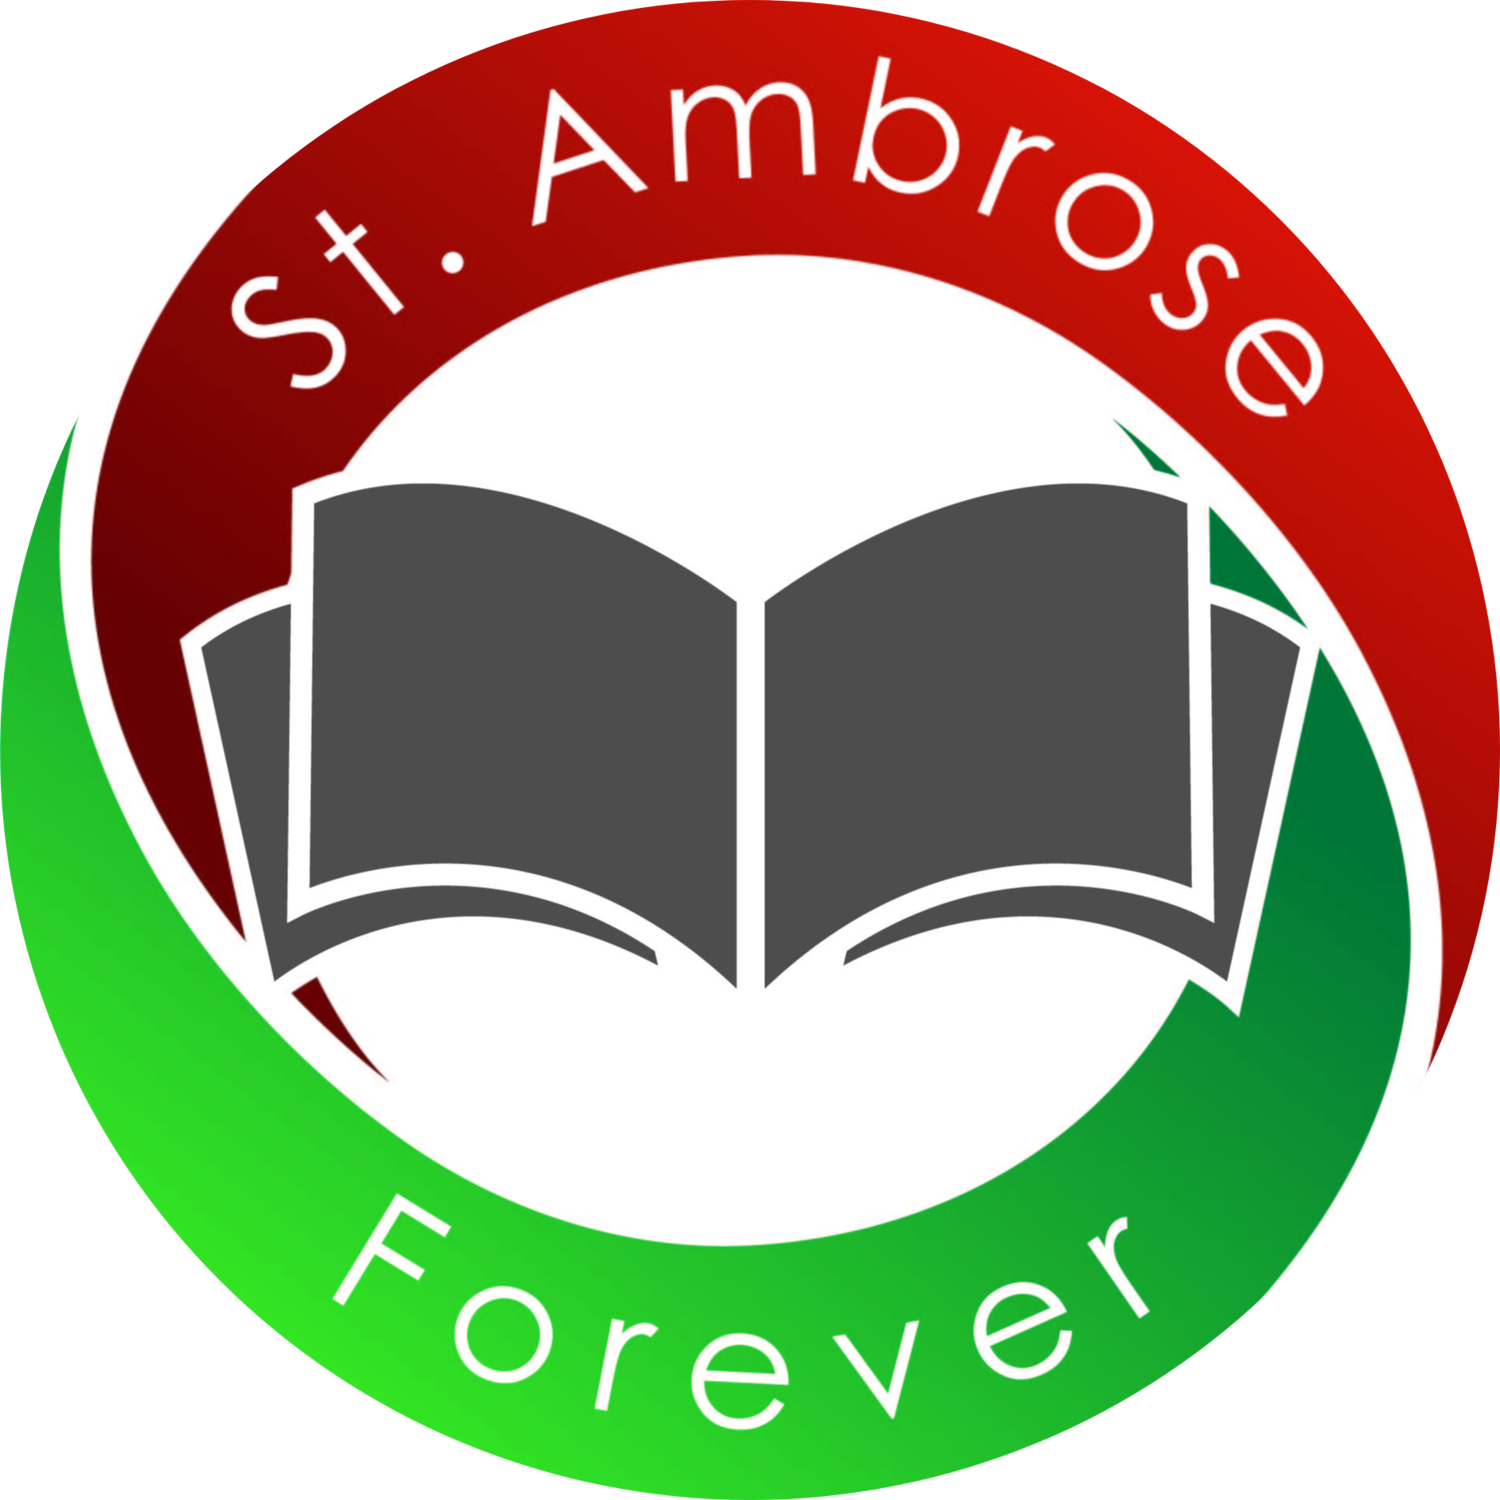 St. Ambrose Forever